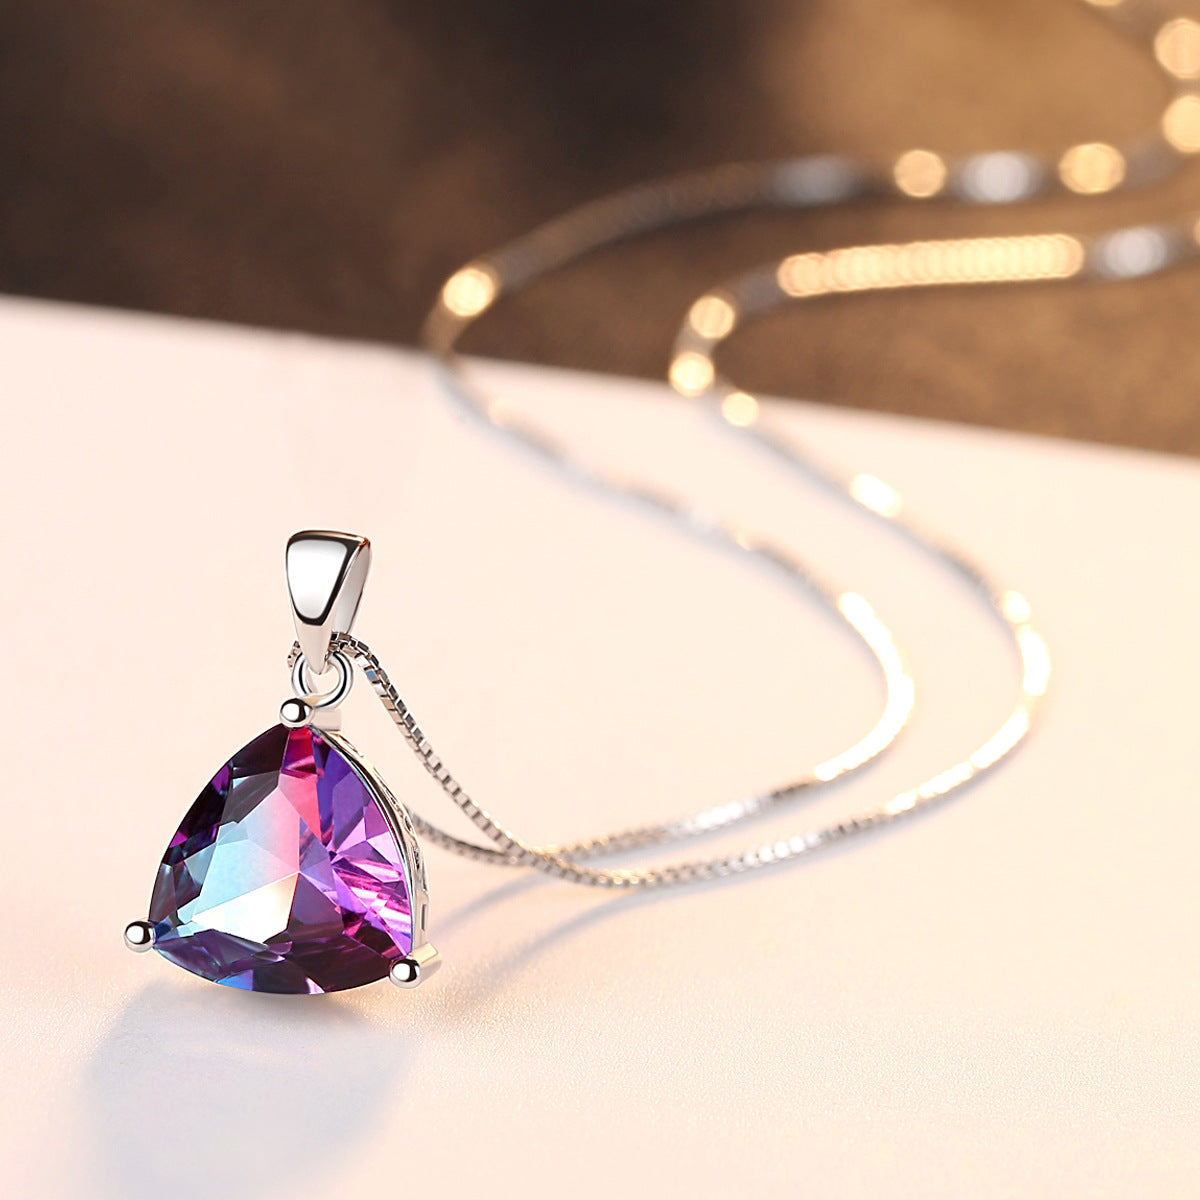 Violet Flame Pendant Necklace